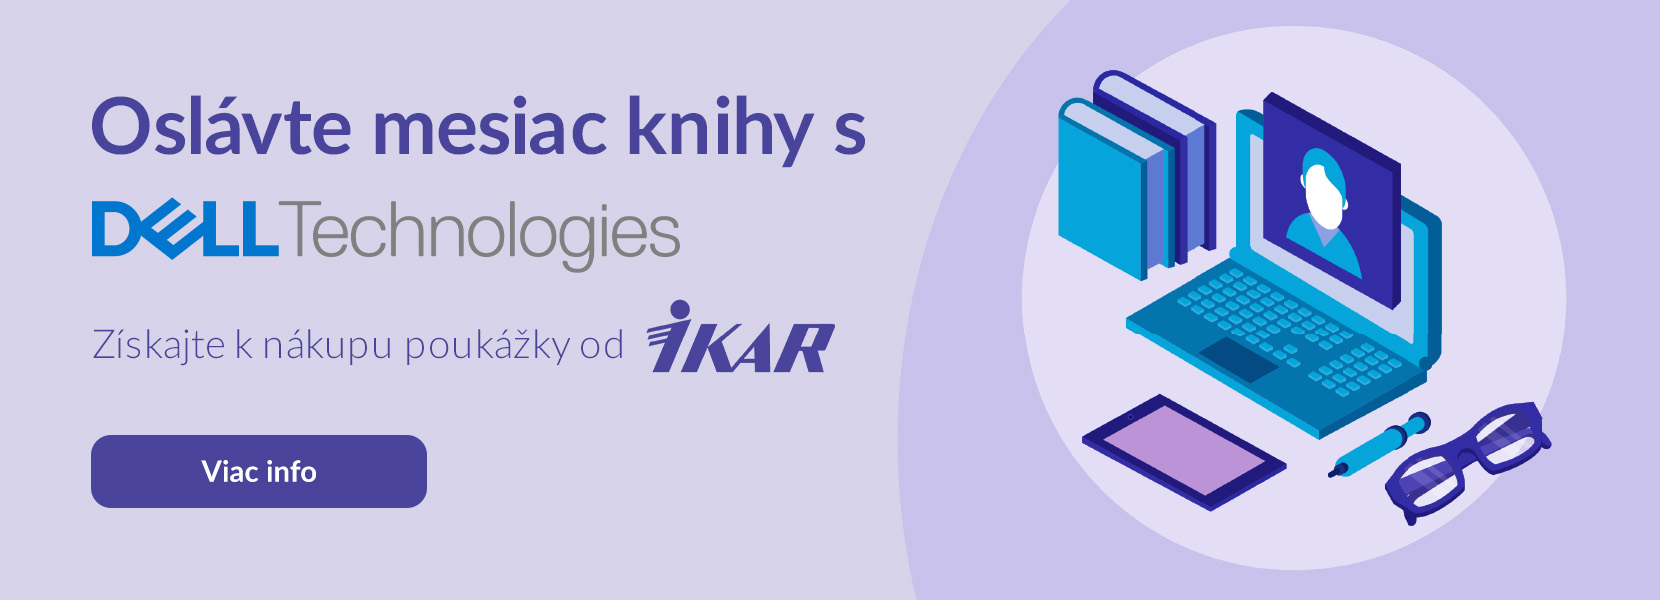 Mesiac knihy s Dell Technologies. Získajte k nákupu poukážky od IKAR.